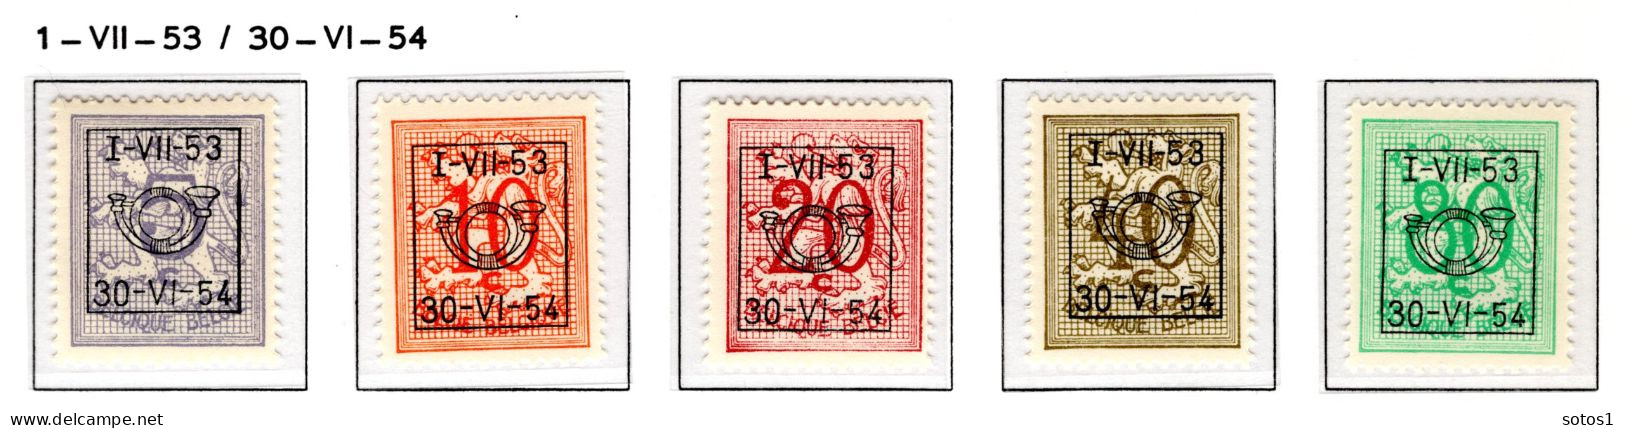 PRE635/639 MNH** 1953 - Cijfer Op Heraldieke Leeuw Type D - REEKS 45 - Typo Precancels 1951-80 (Figure On Lion)